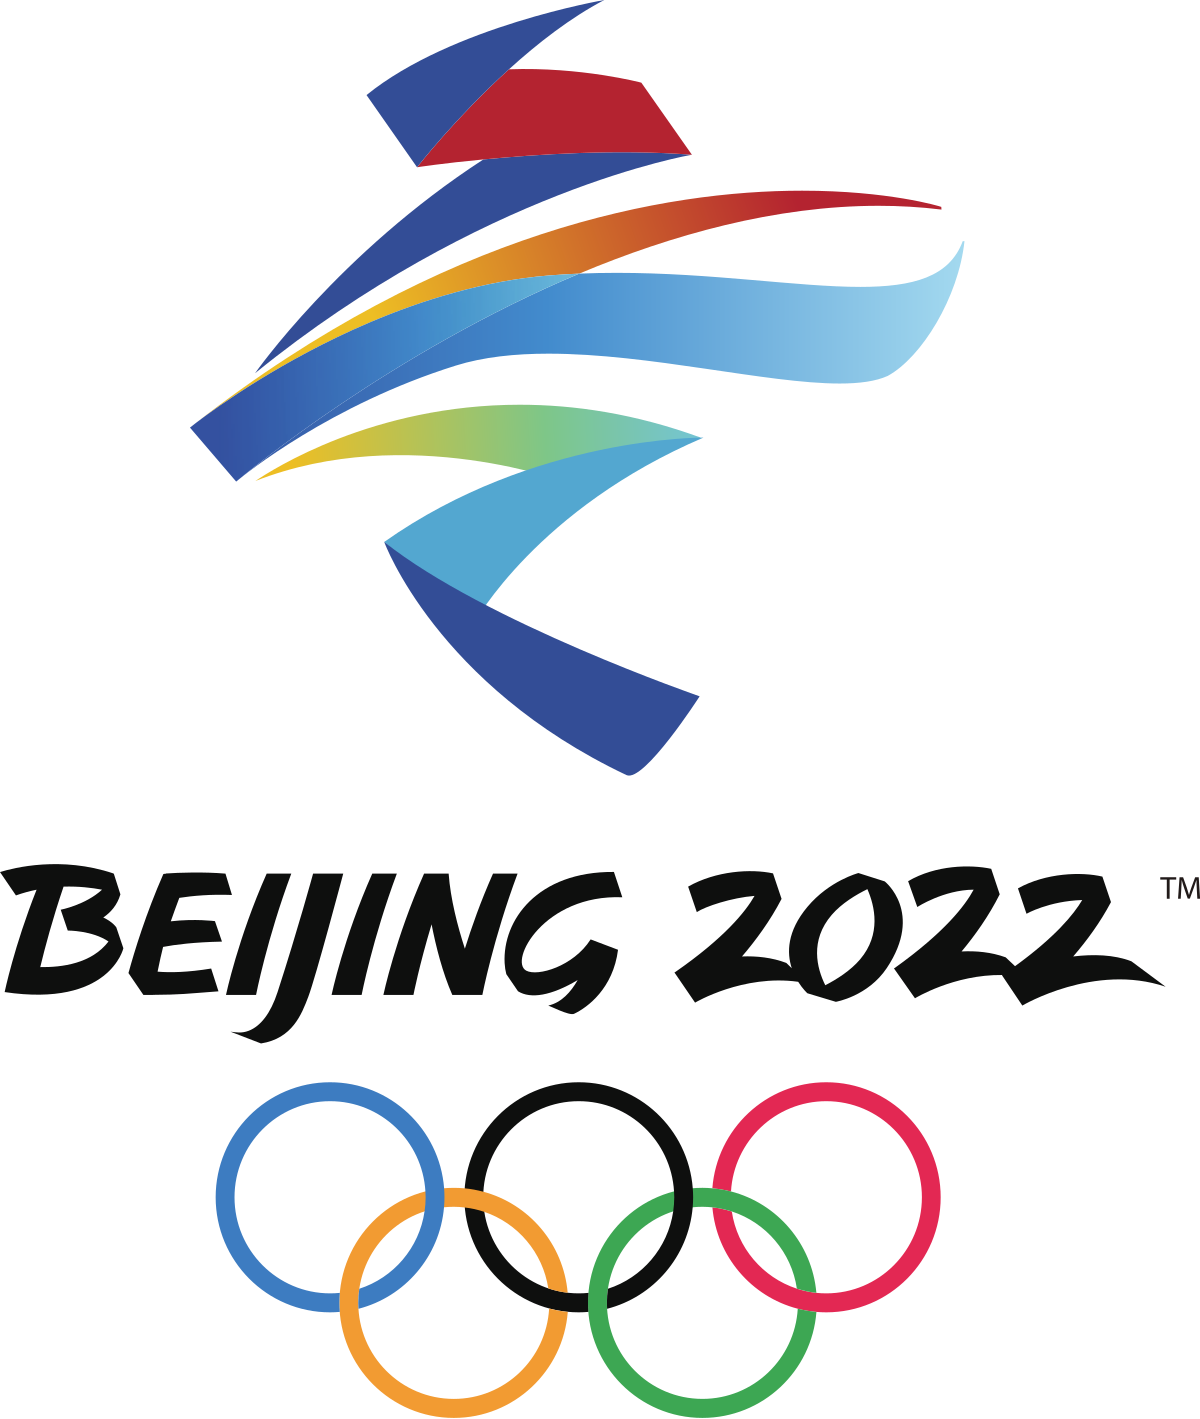 2022年北京冬季奧運會會標